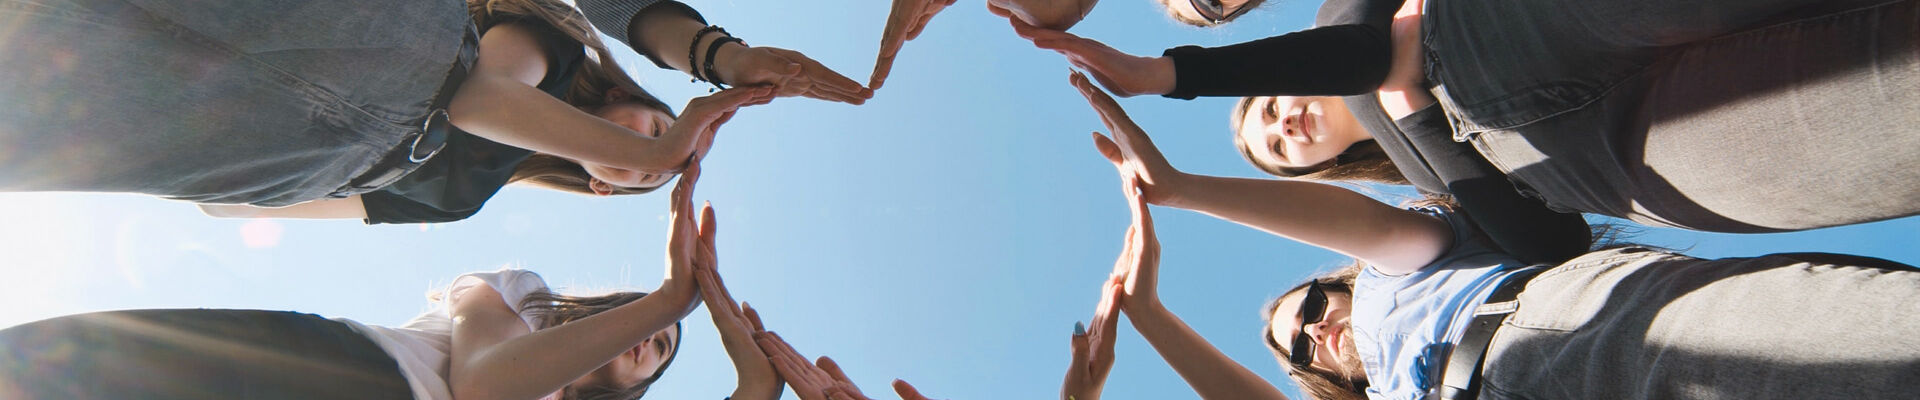 Un groupe de personnes sont en cercle et forment un cœur avec leurs bras.